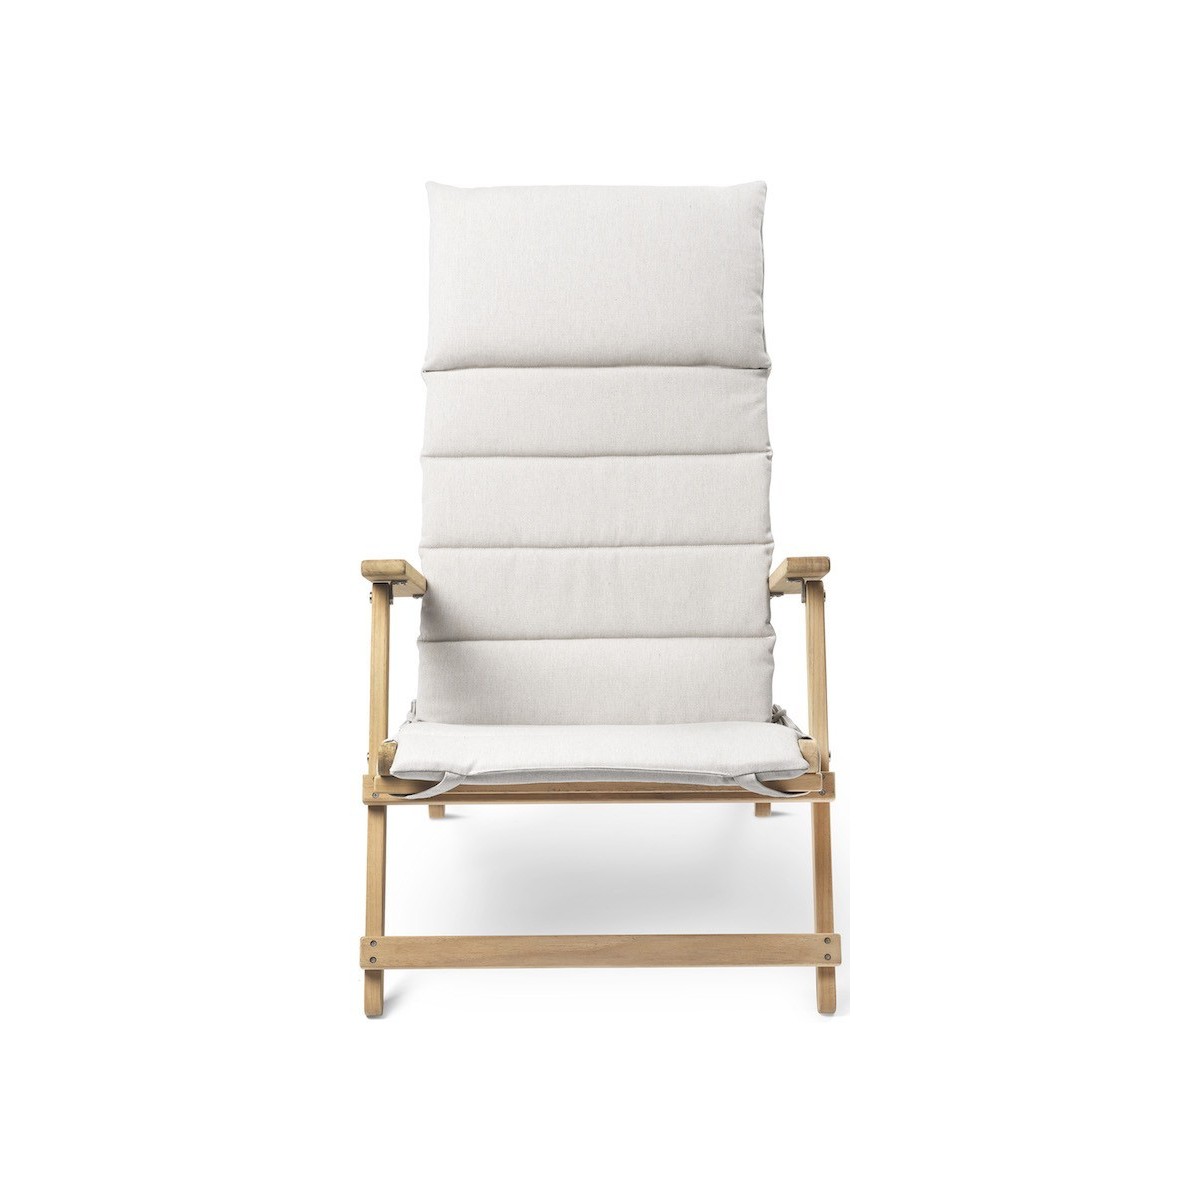 Deck chair BM5568 with cushion